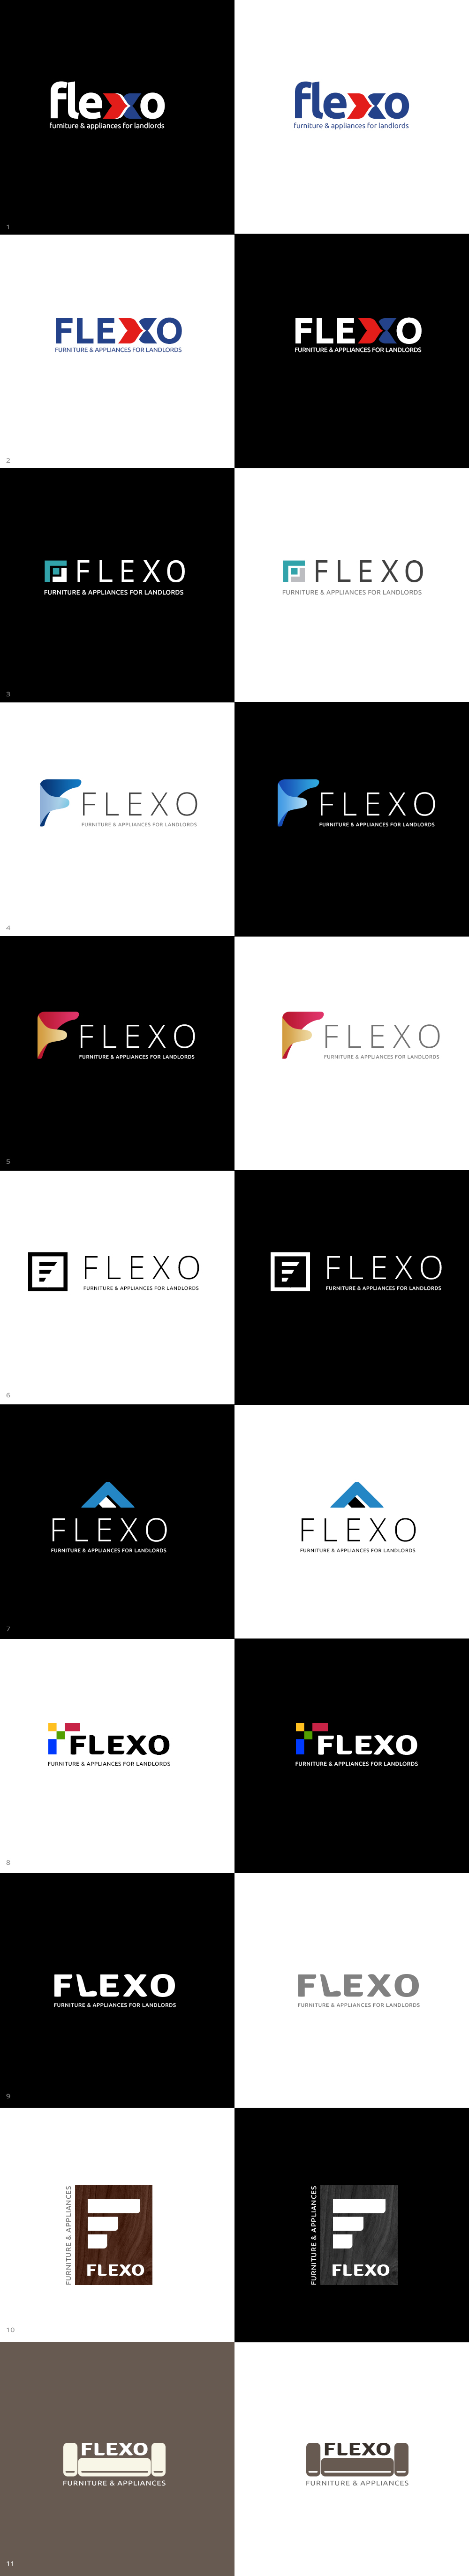 flexo_logo_